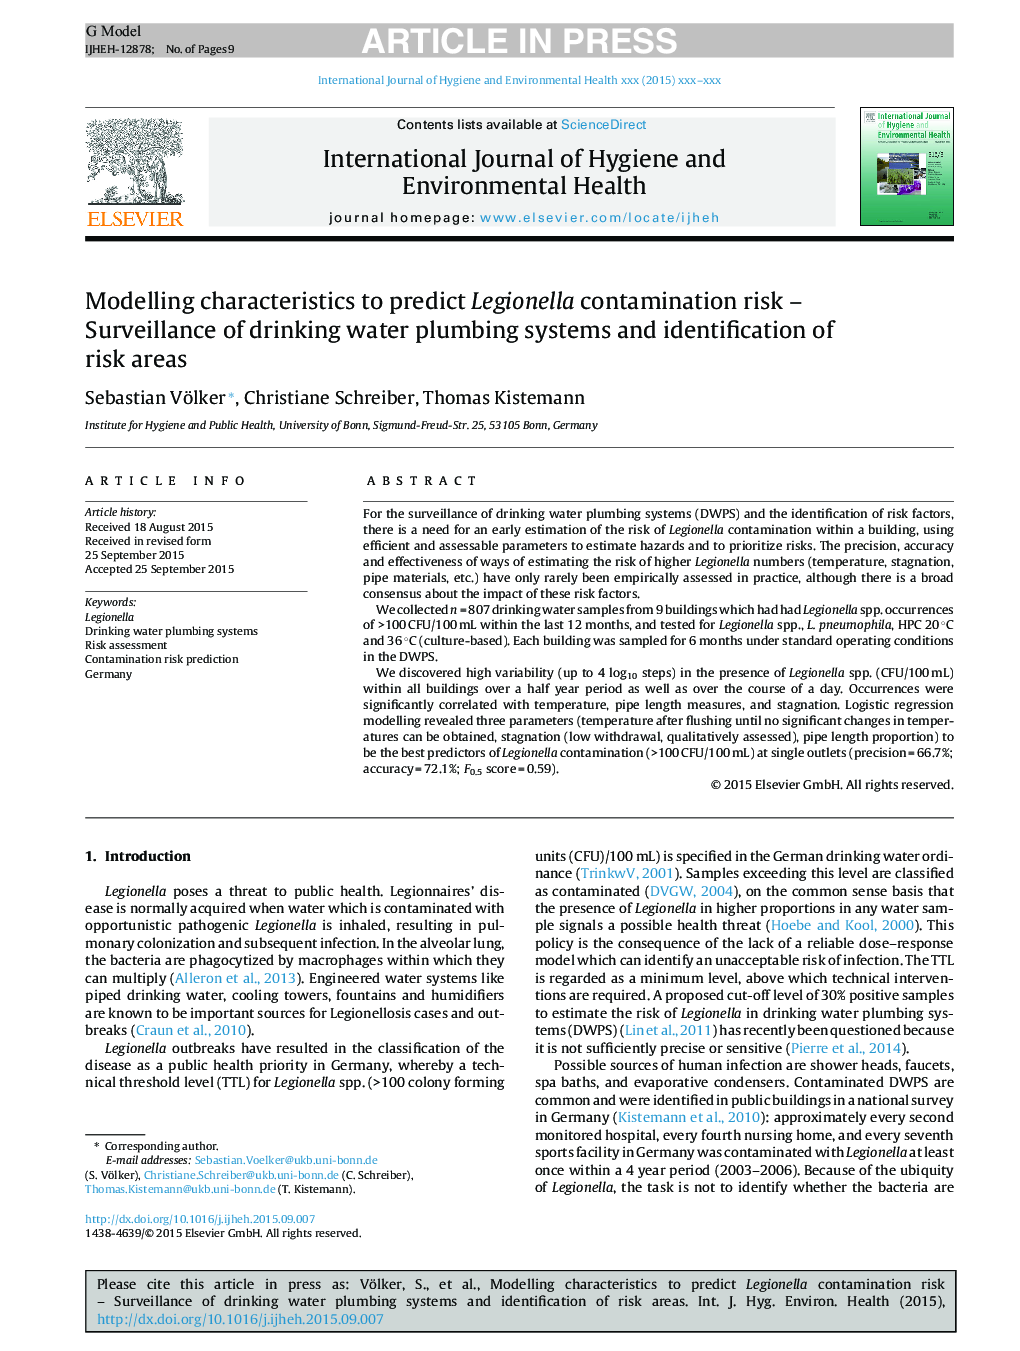 ویژگی های مدل سازی برای پیش بینی خطر آلودگی لژیونلا - نظارت بر سیستم های لوله کشی آب آشامیدنی و شناسایی مناطق خطر 